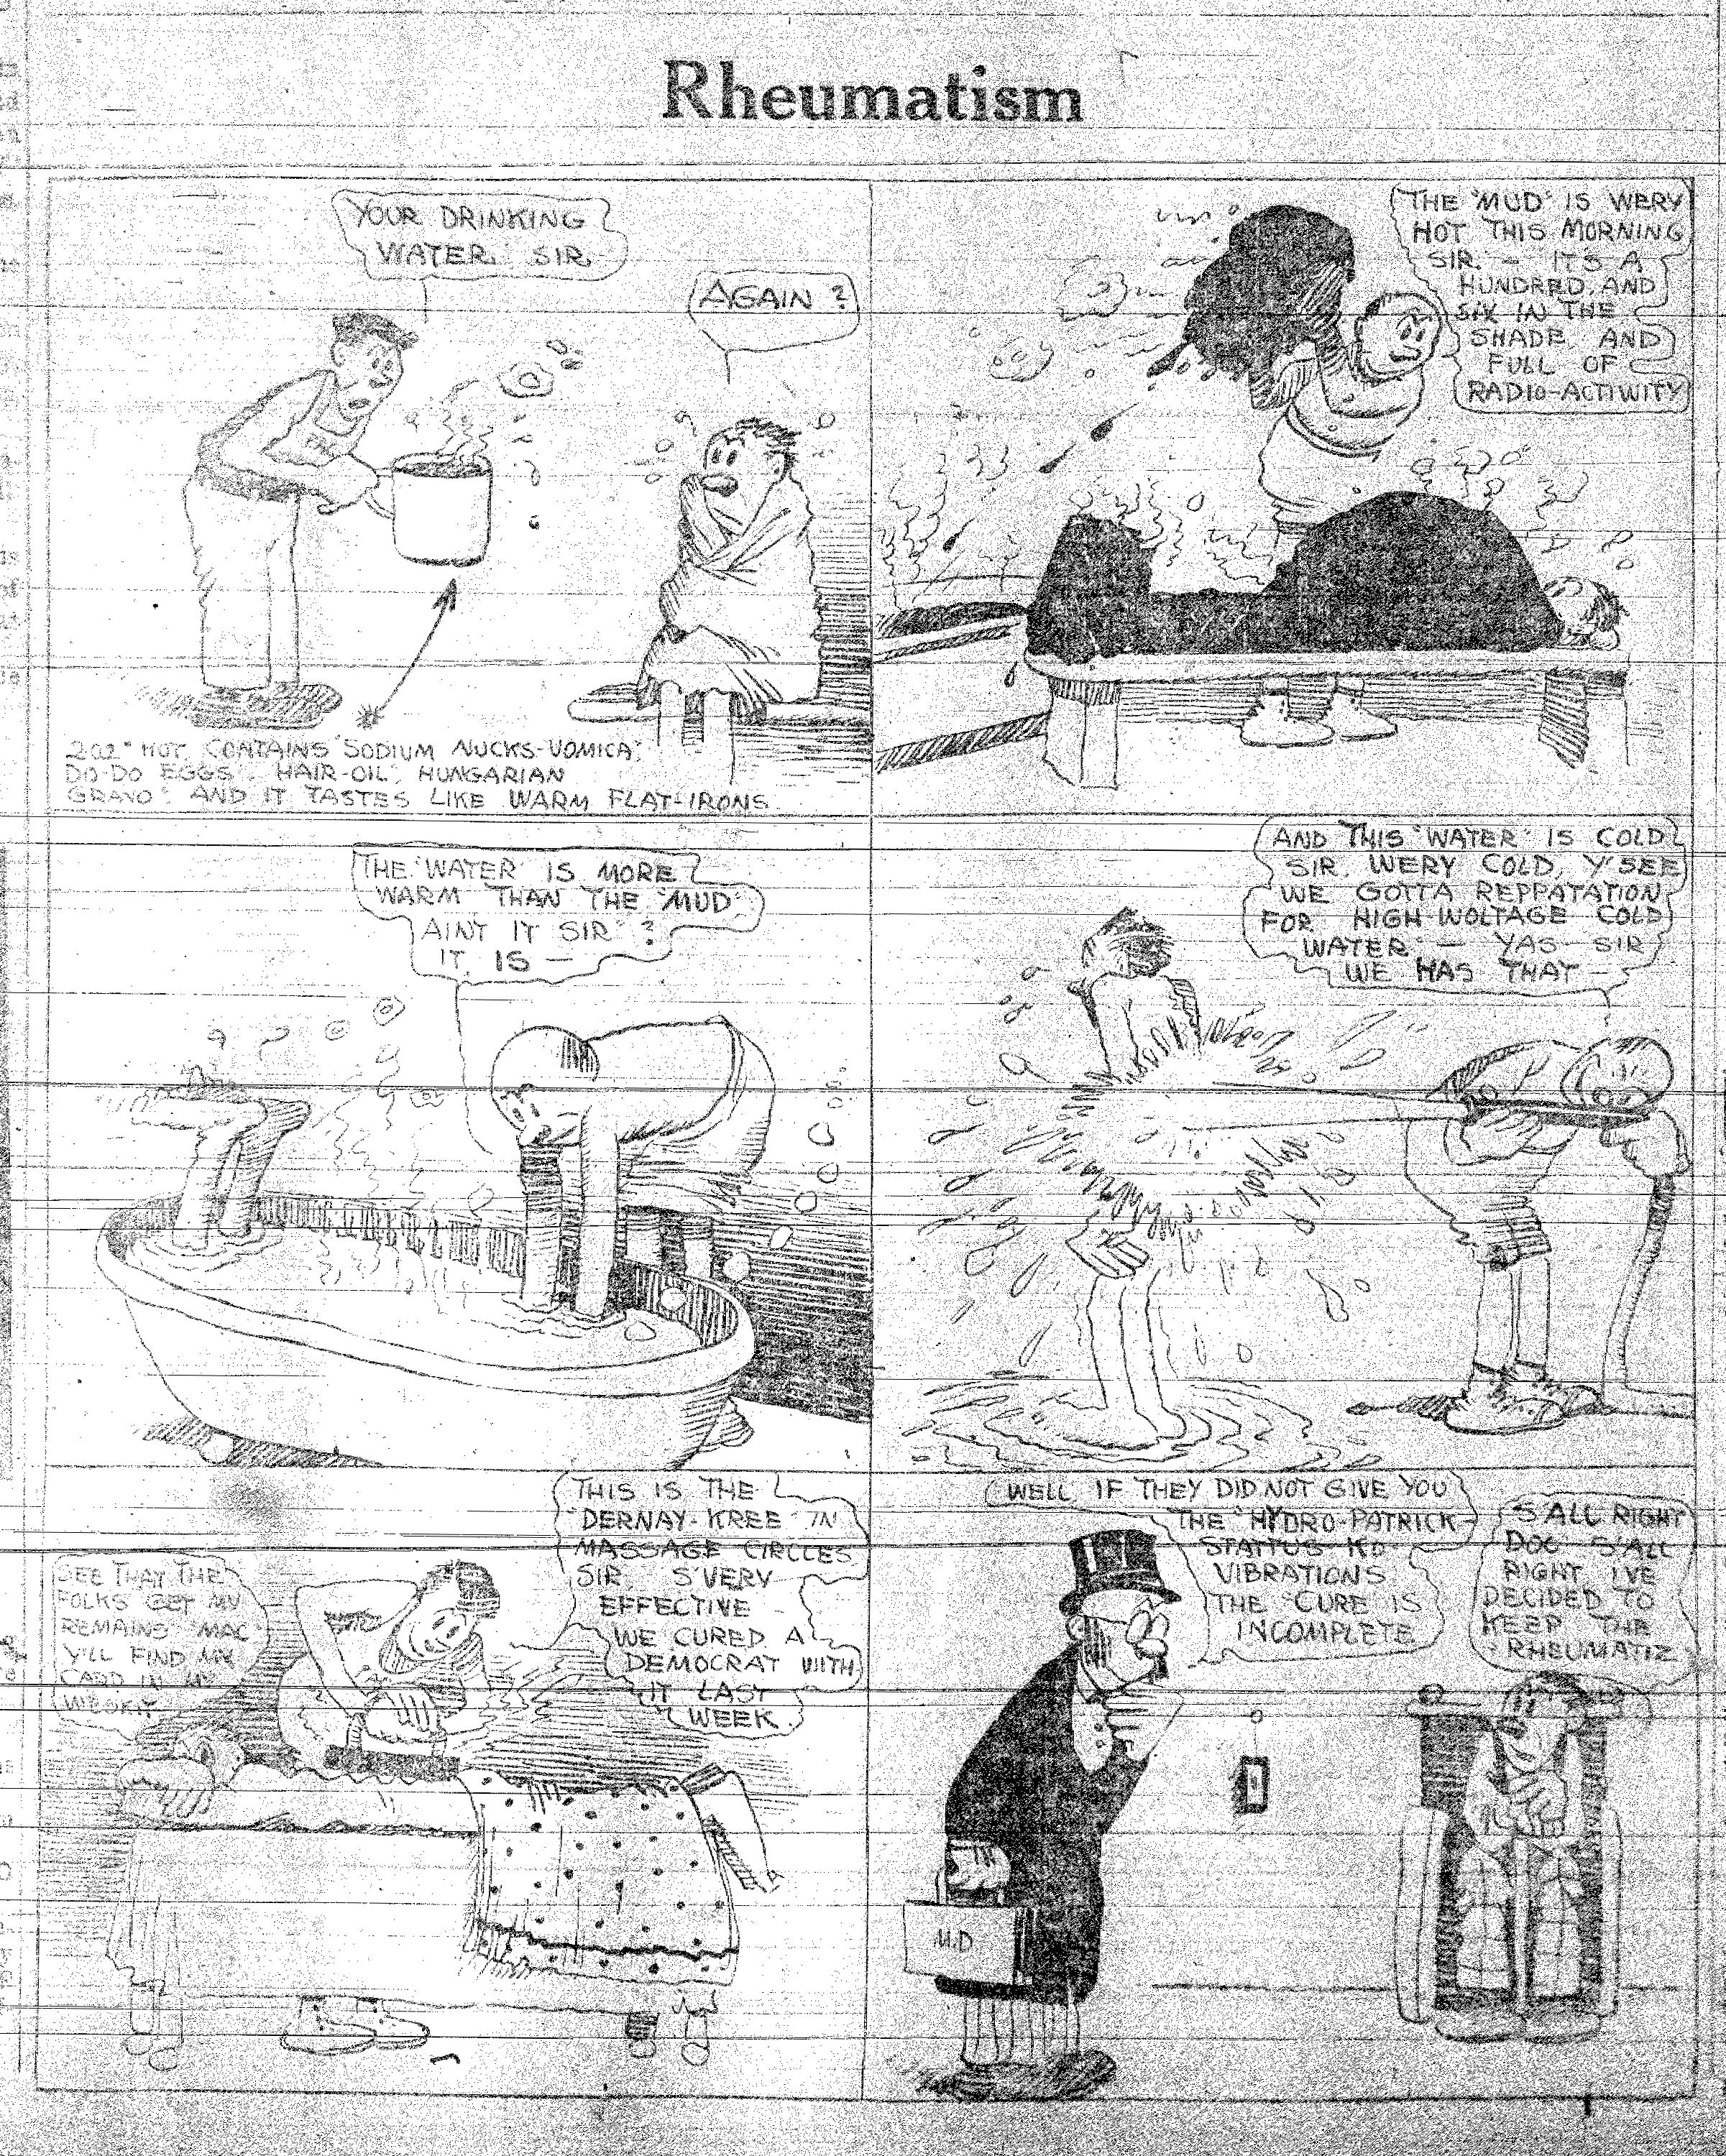 14-1913-09-20-nyej-herriman-rheumatism-comic.jpg